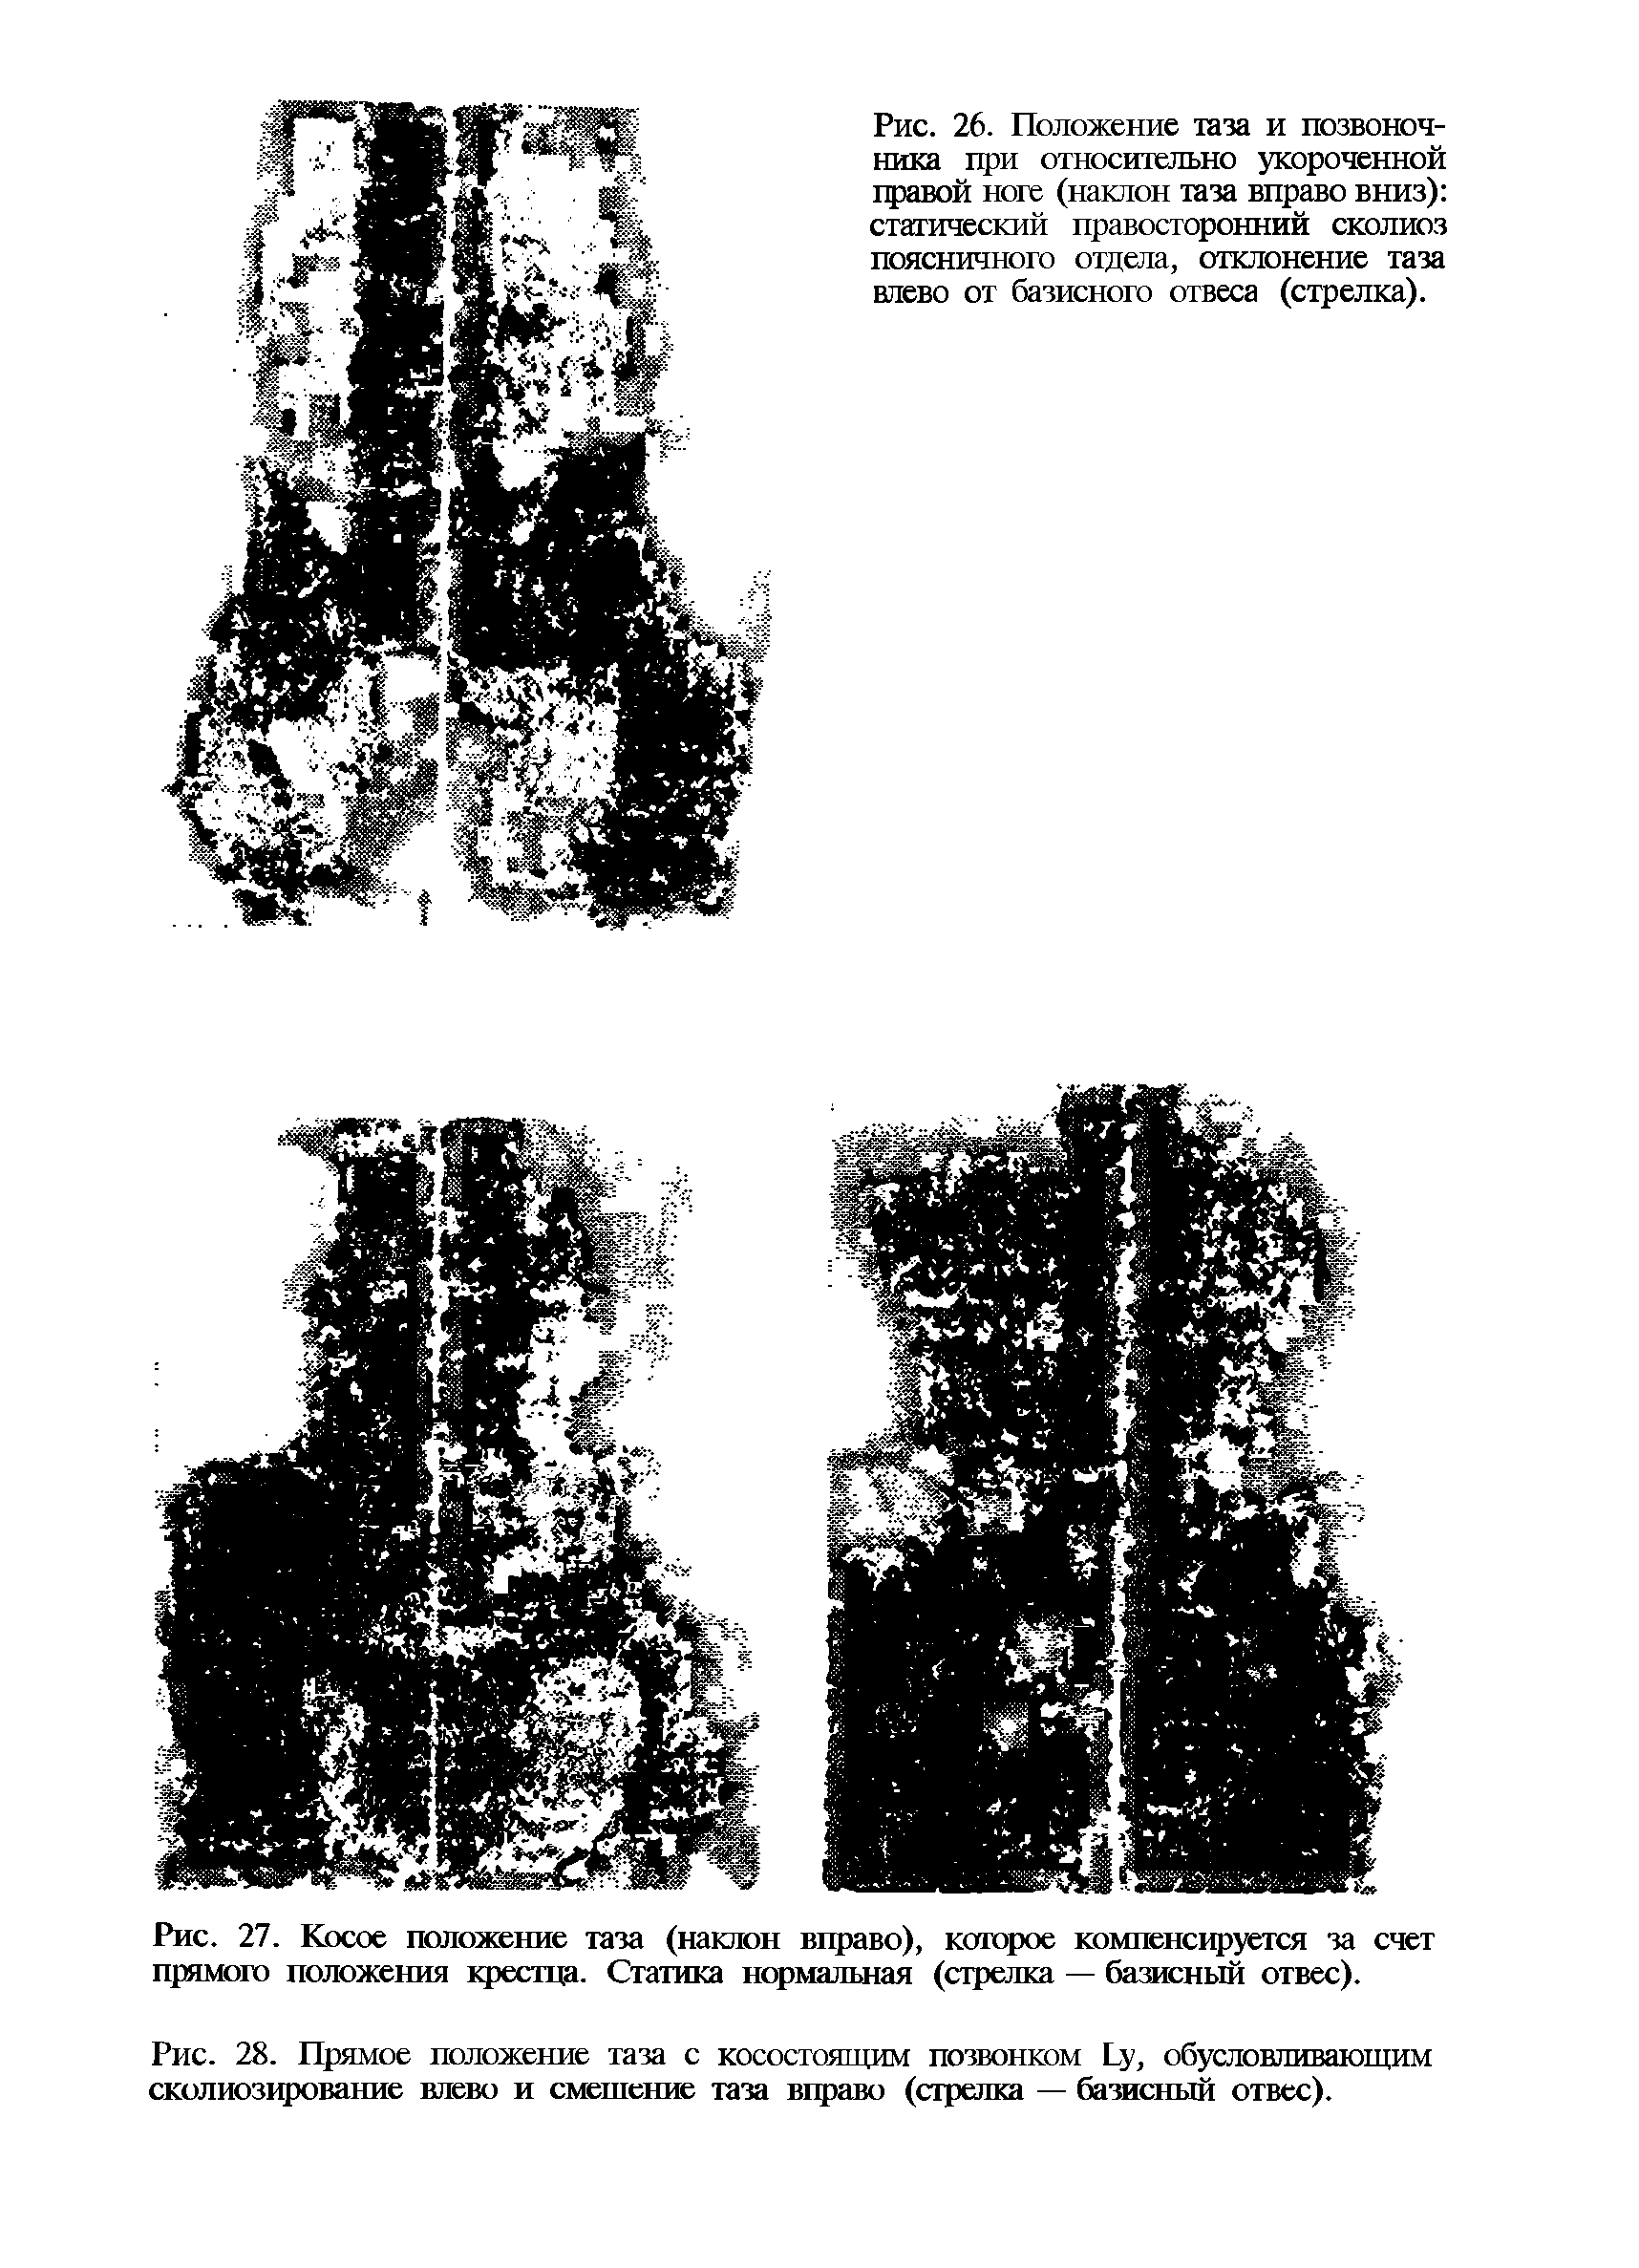 Рис. 27. Косое положение таза (наклон вправо), которое компенсируется за счет прямого положения крестца. Статика нормальная (стрелка — базисный отвес).